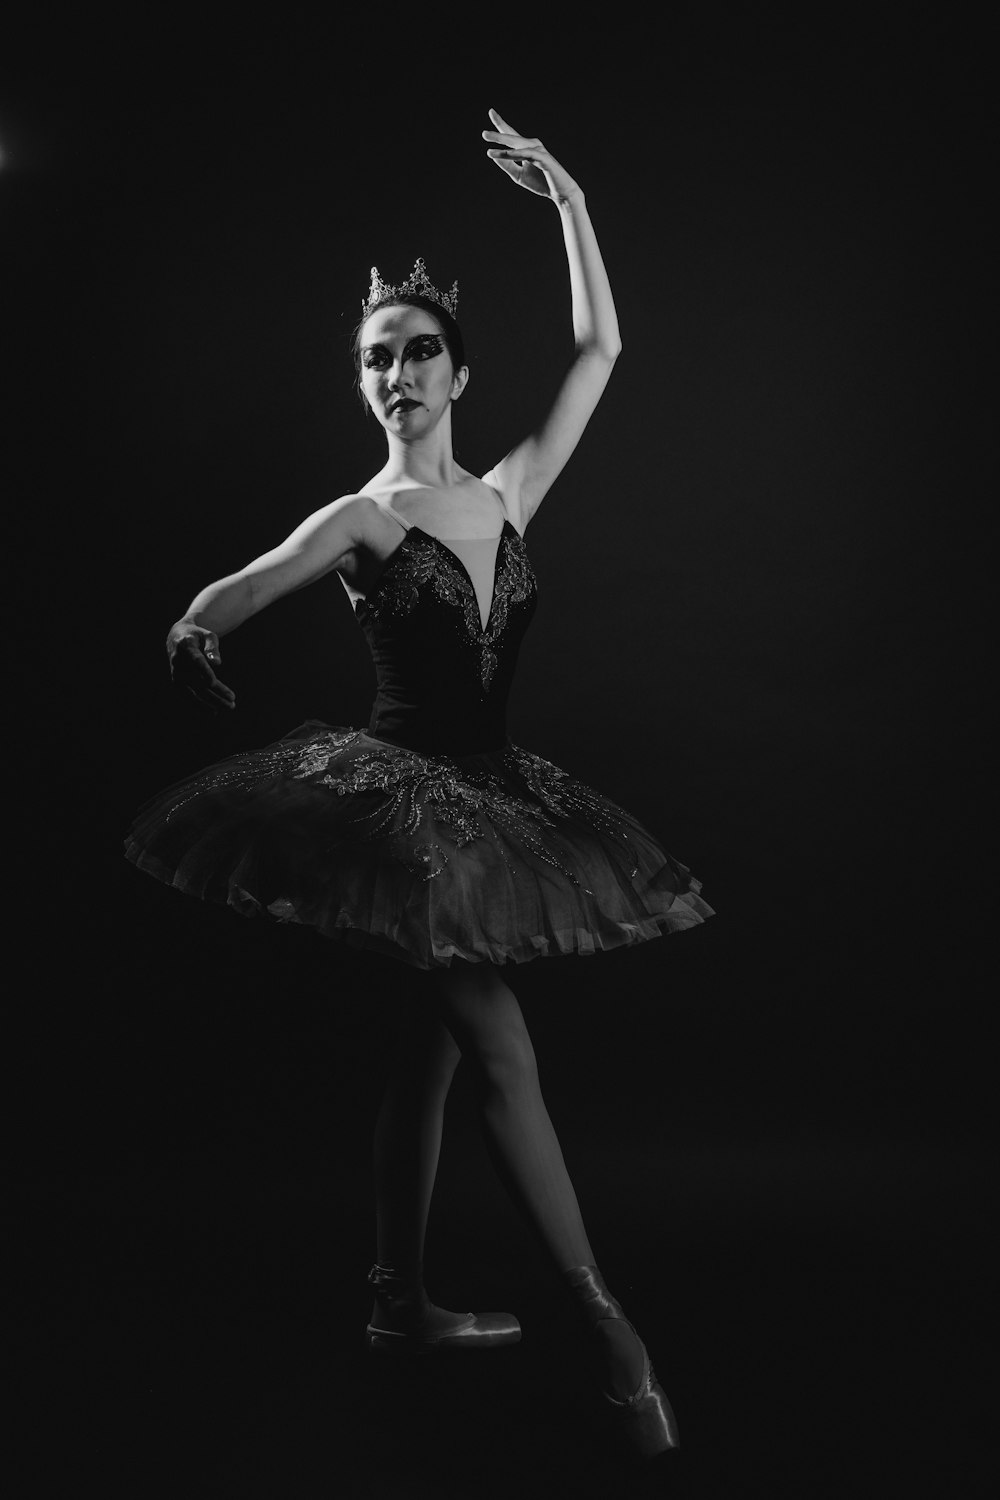 黒いチューブドレスの女性の写真 – Unsplashの無料バレエ写真